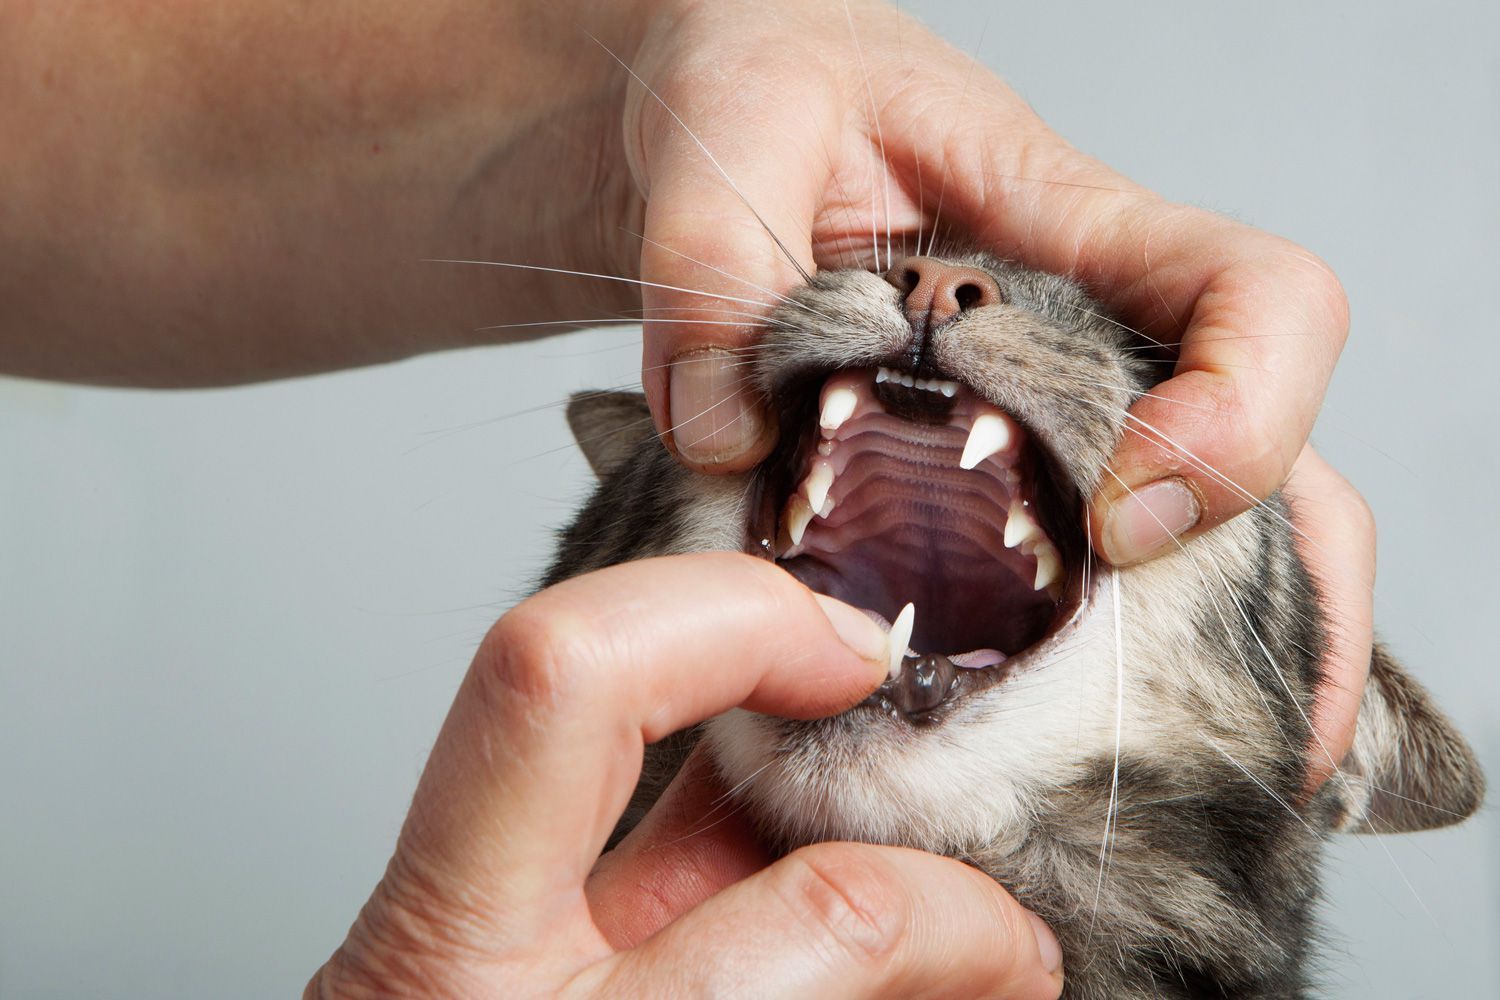 Пена у рта у кошки или котенка, причины: почему это происходит и сто делать в домашних условиях?